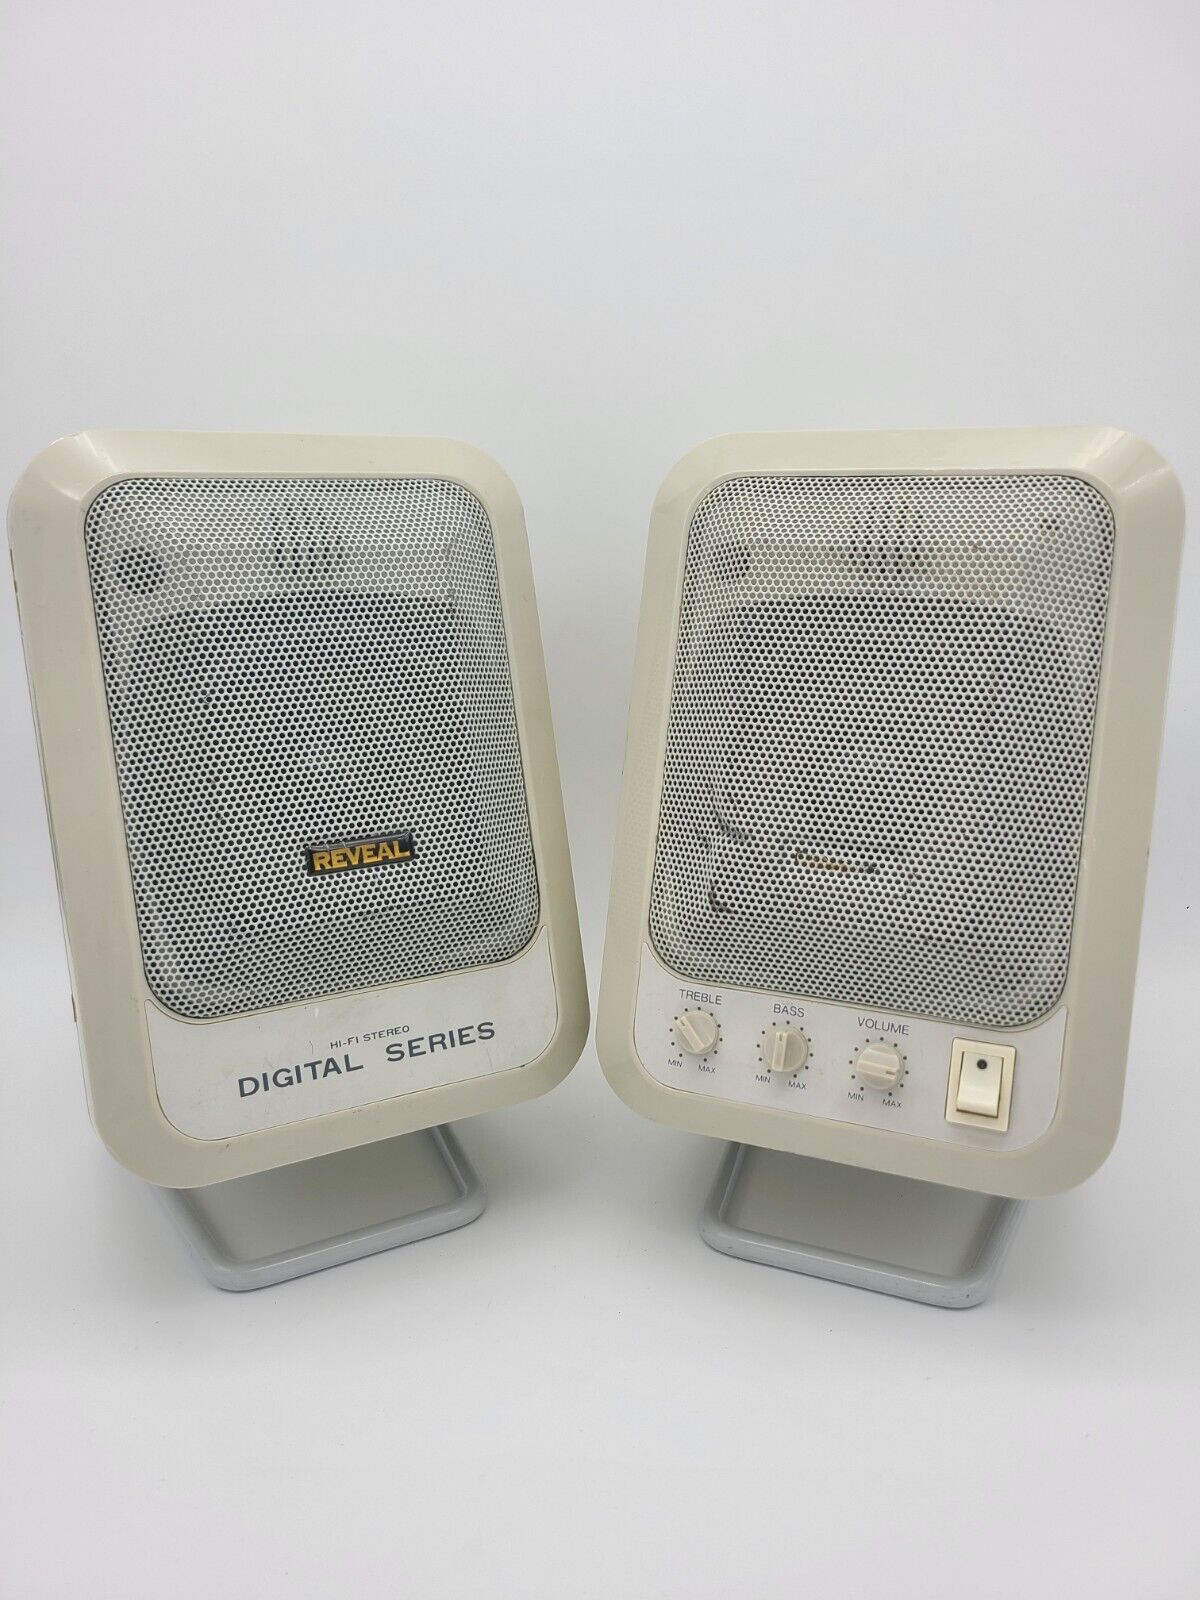 Vintage Reveal multimedia series computer digital speakers